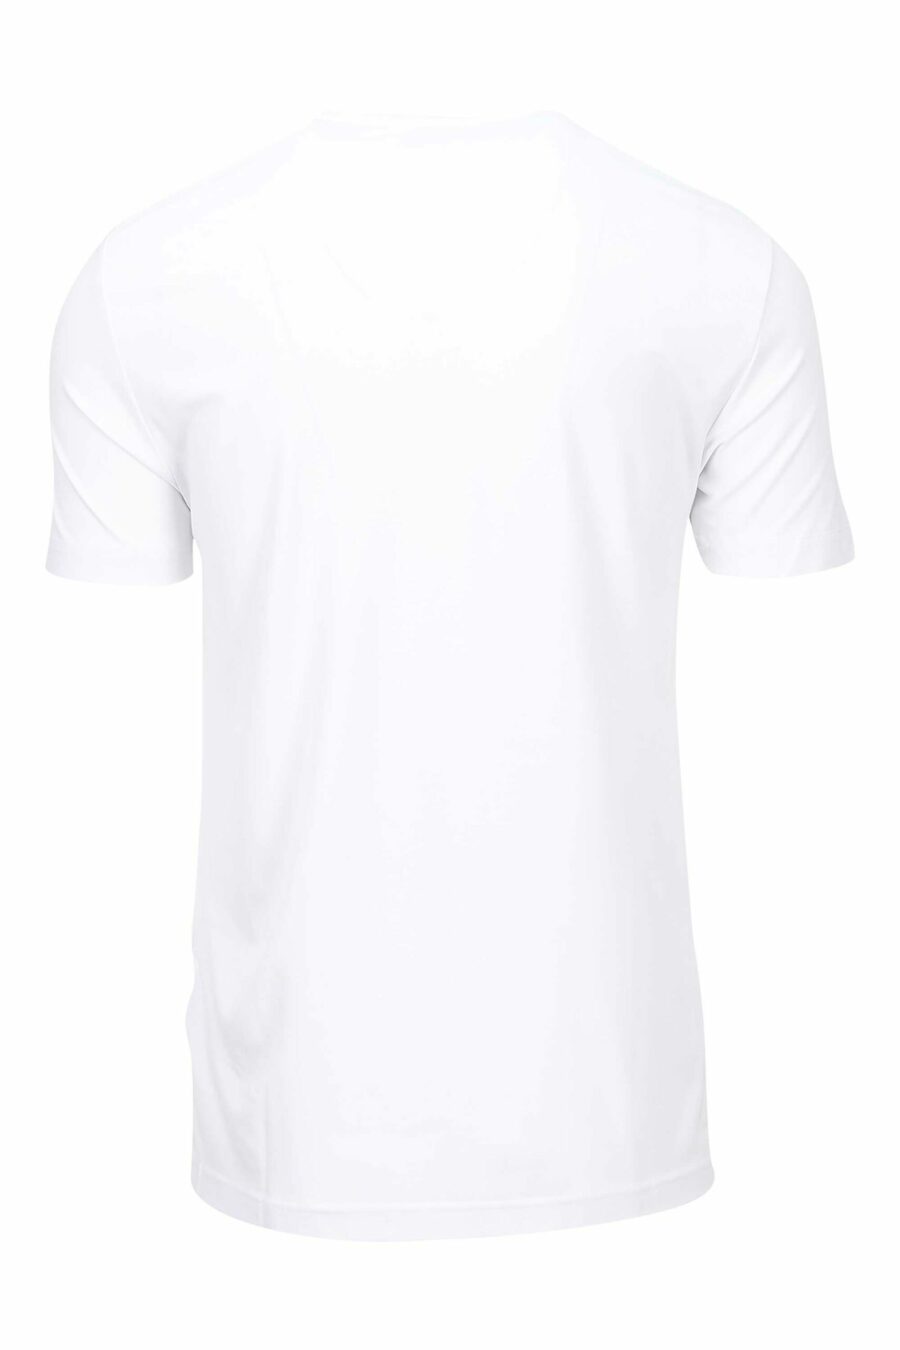 Camiseta blanca con minilogo escudo "lux identity" - 8056787978898 1 scaled